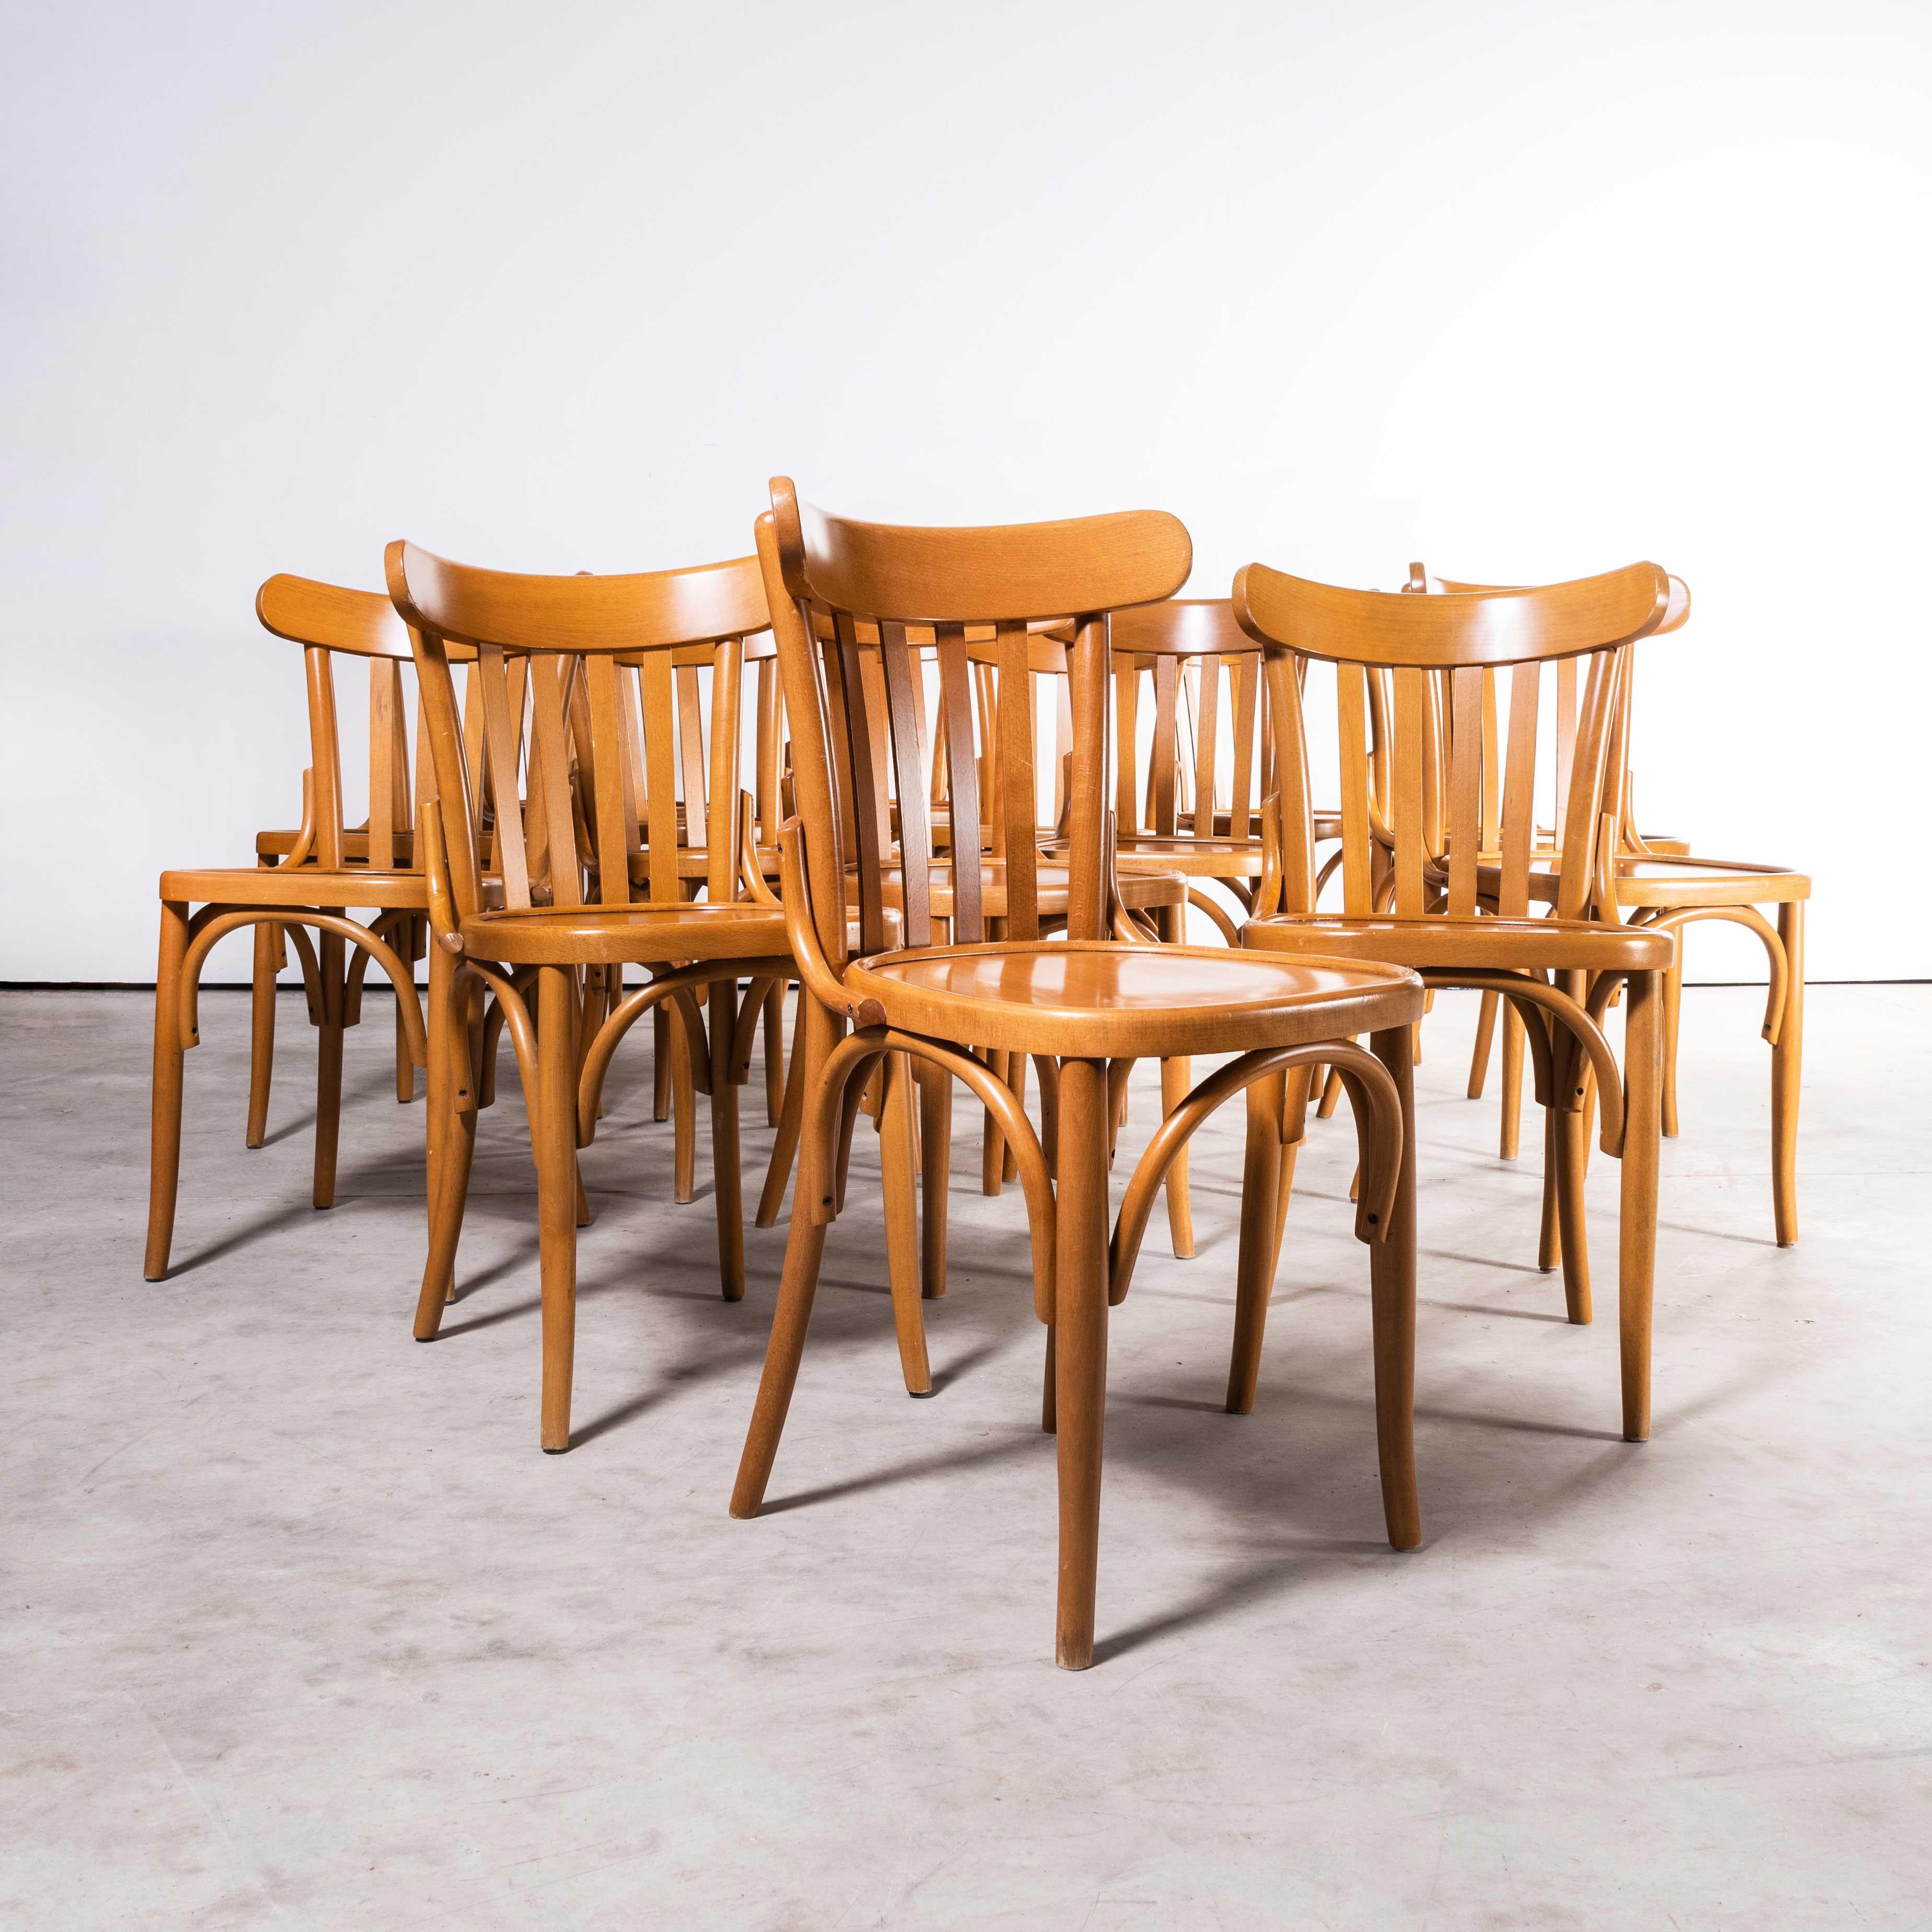 Chaises de salle à manger en bois de hêtre miel Bentwood des années 1970 - ensemble de quinze pièces
Chaises de salle à manger en hêtre miel Bentwood des années 1970 - ensemble de quinze. Achetées en France, ces chaises sont issues de la production